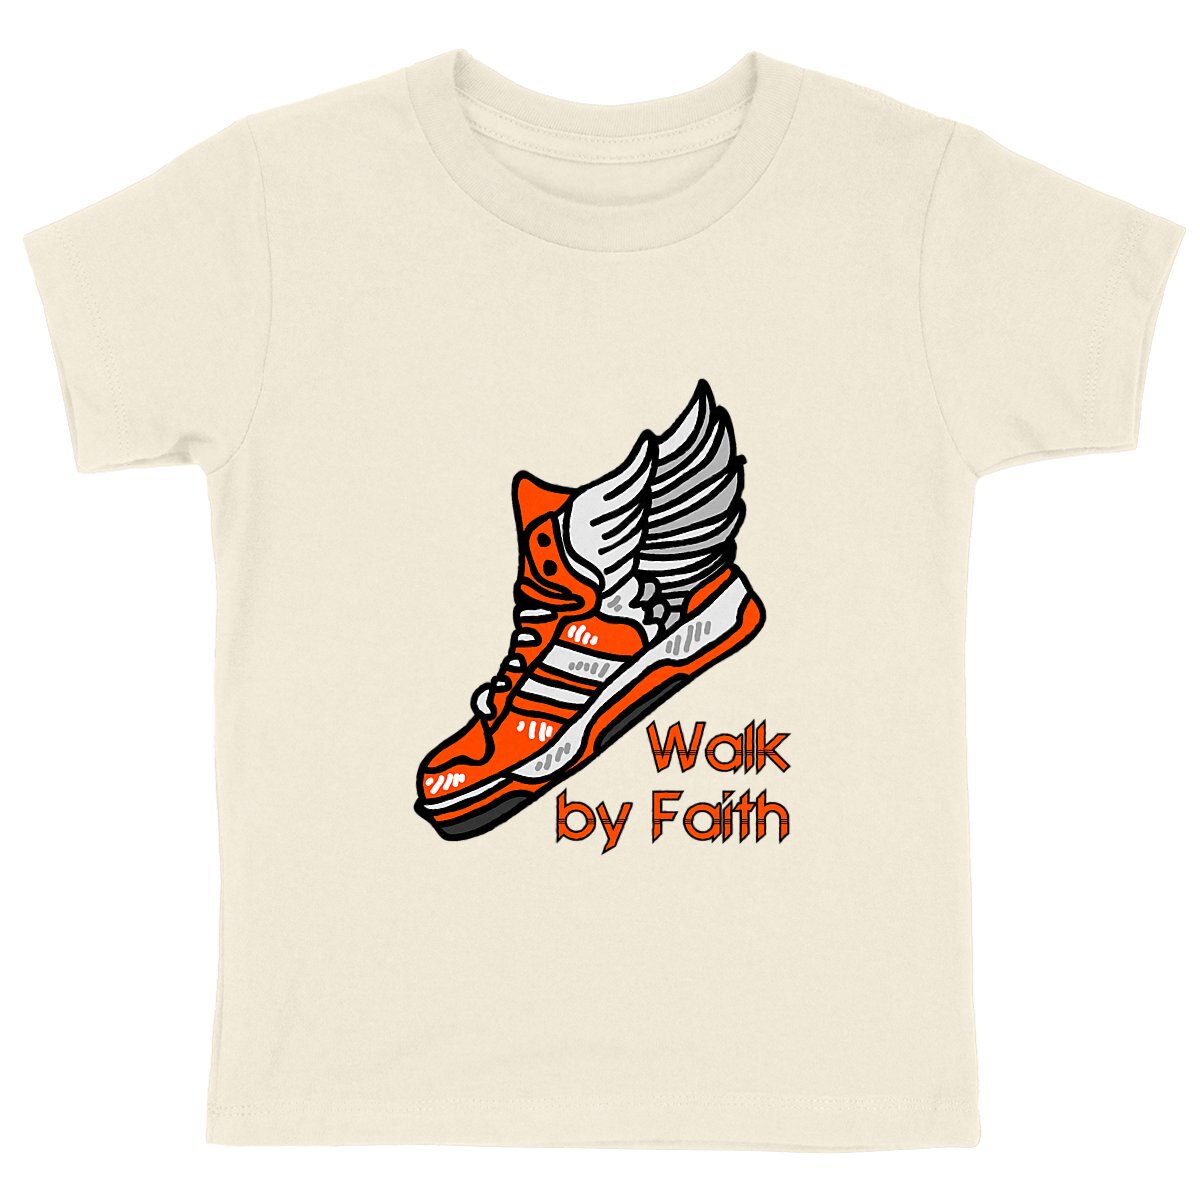 WALK BY FAITH Premium Kids T-Shirt